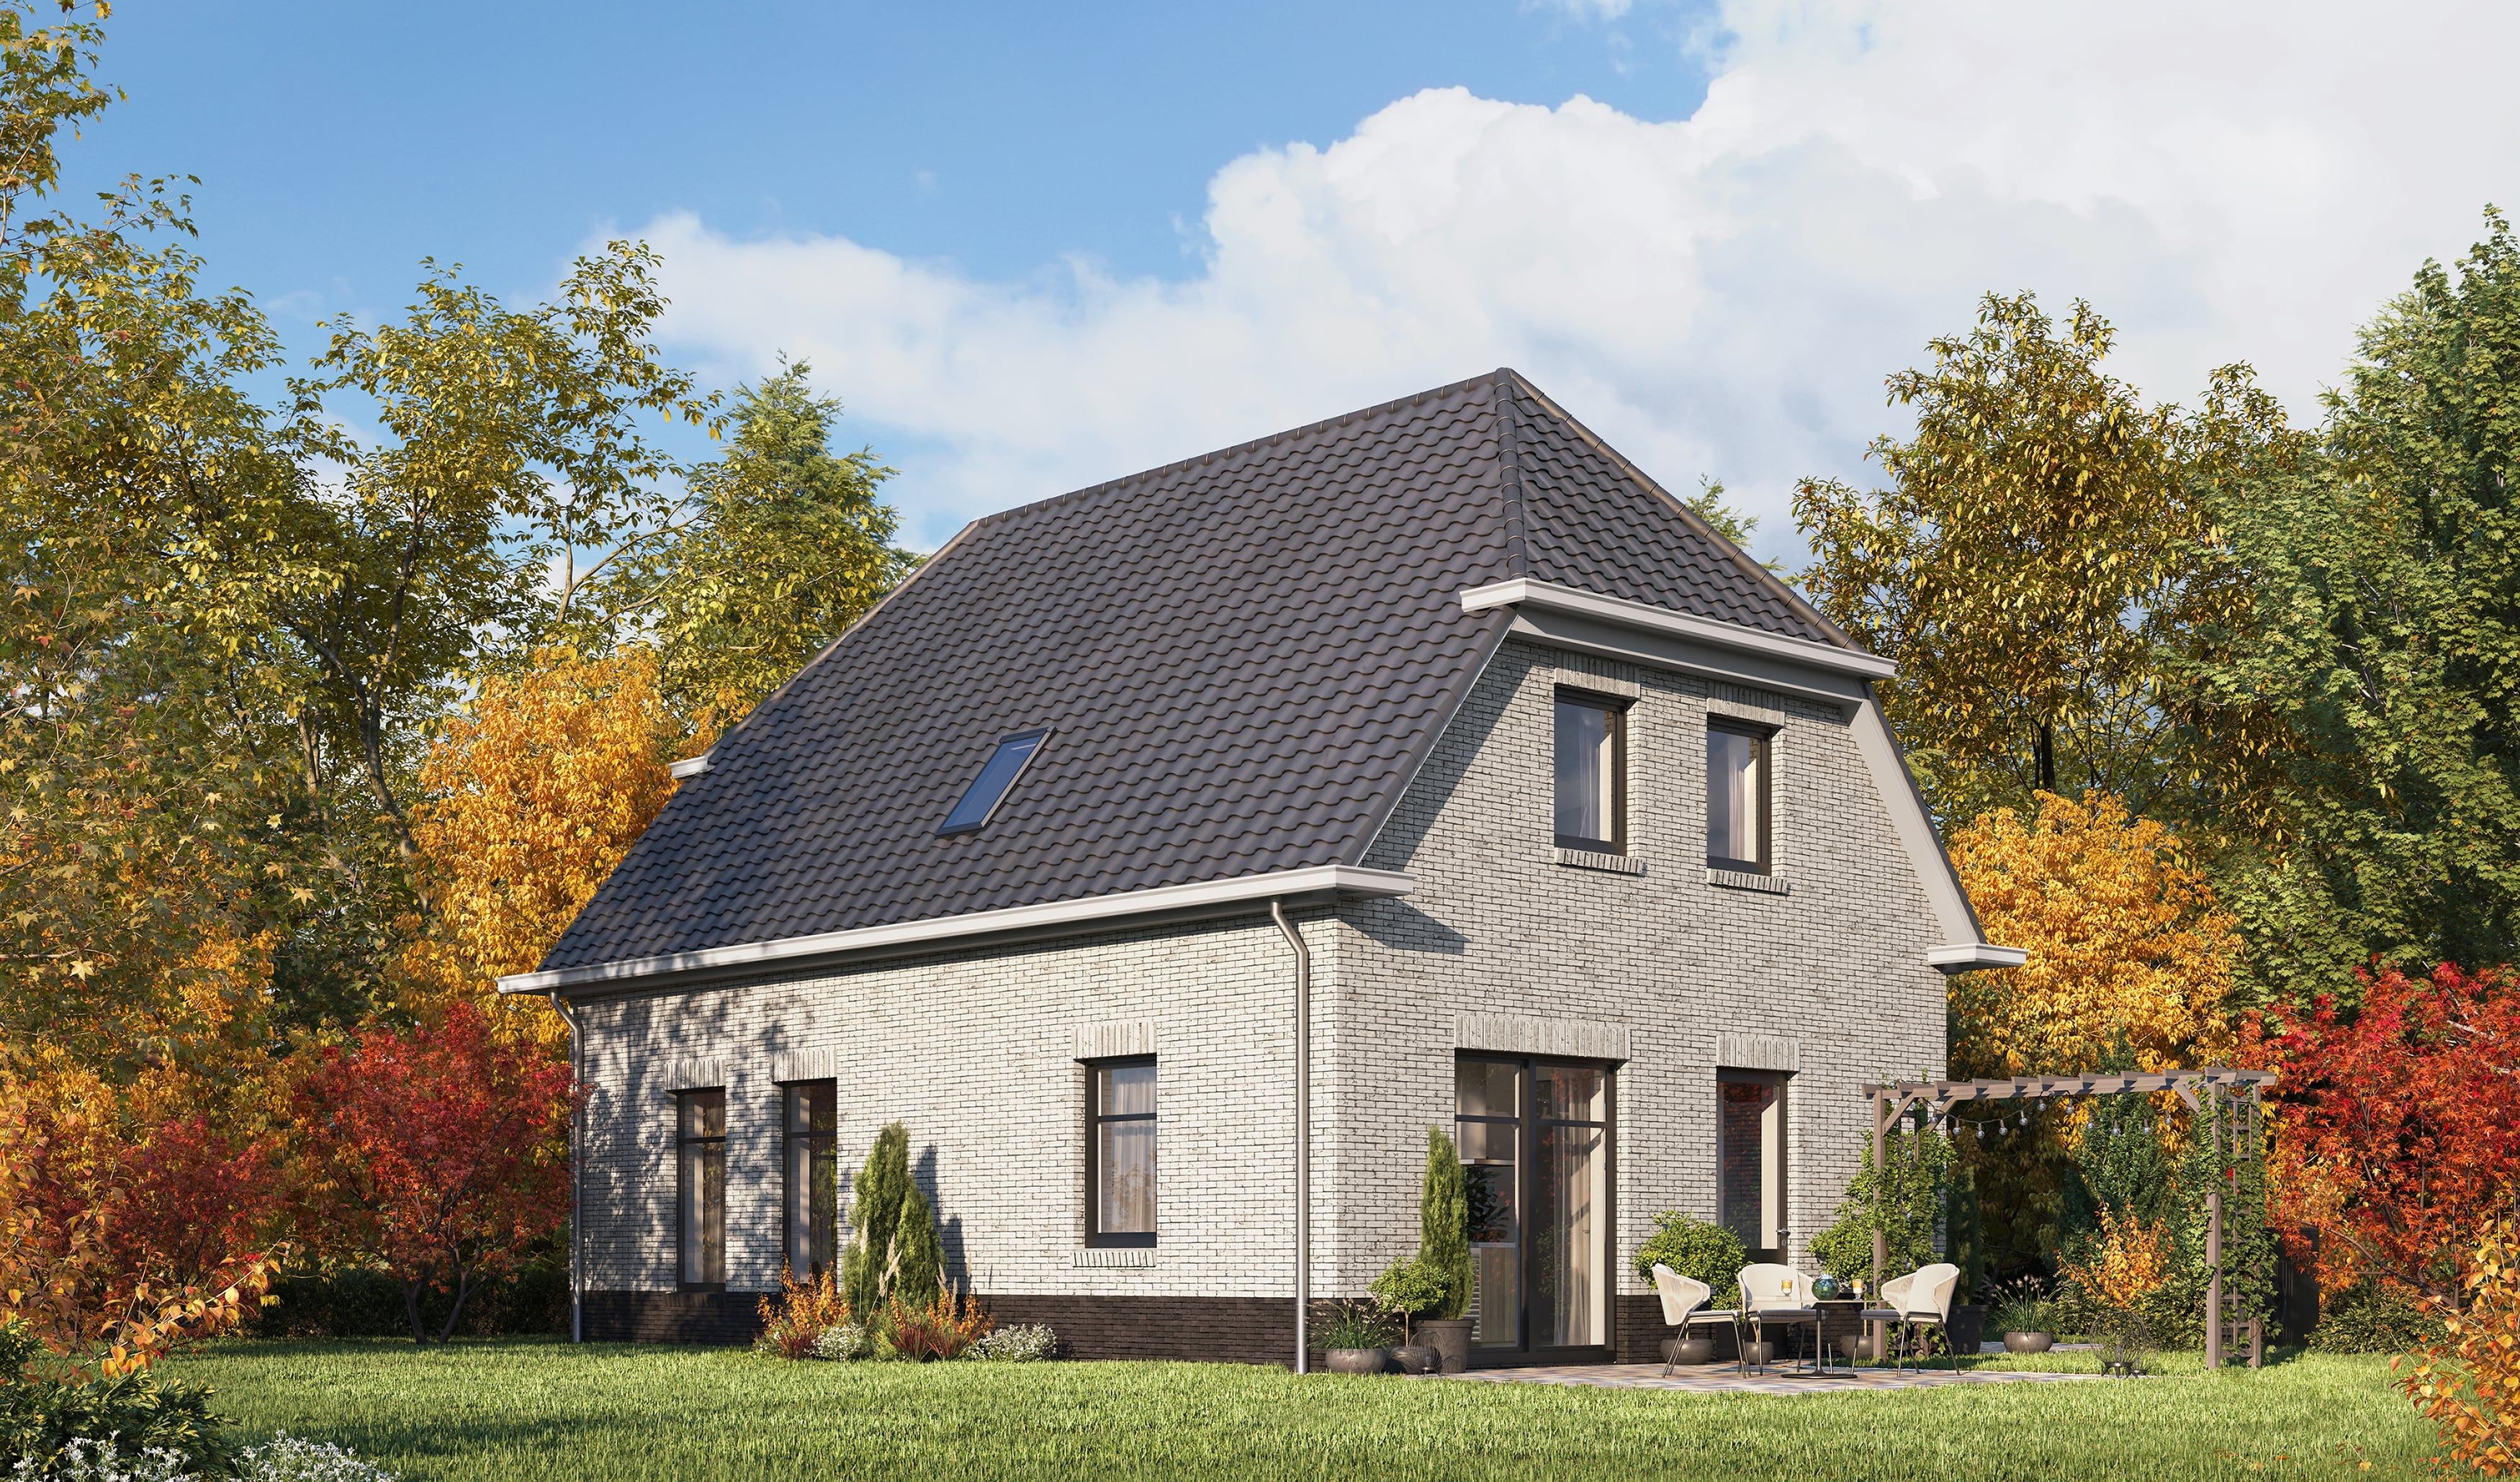 3D Außen Visualisierung des Katalogs eines Muster Einfamilienhauses mit Garten in Deutschland, der Schweiz, den Niederlanden und Europa